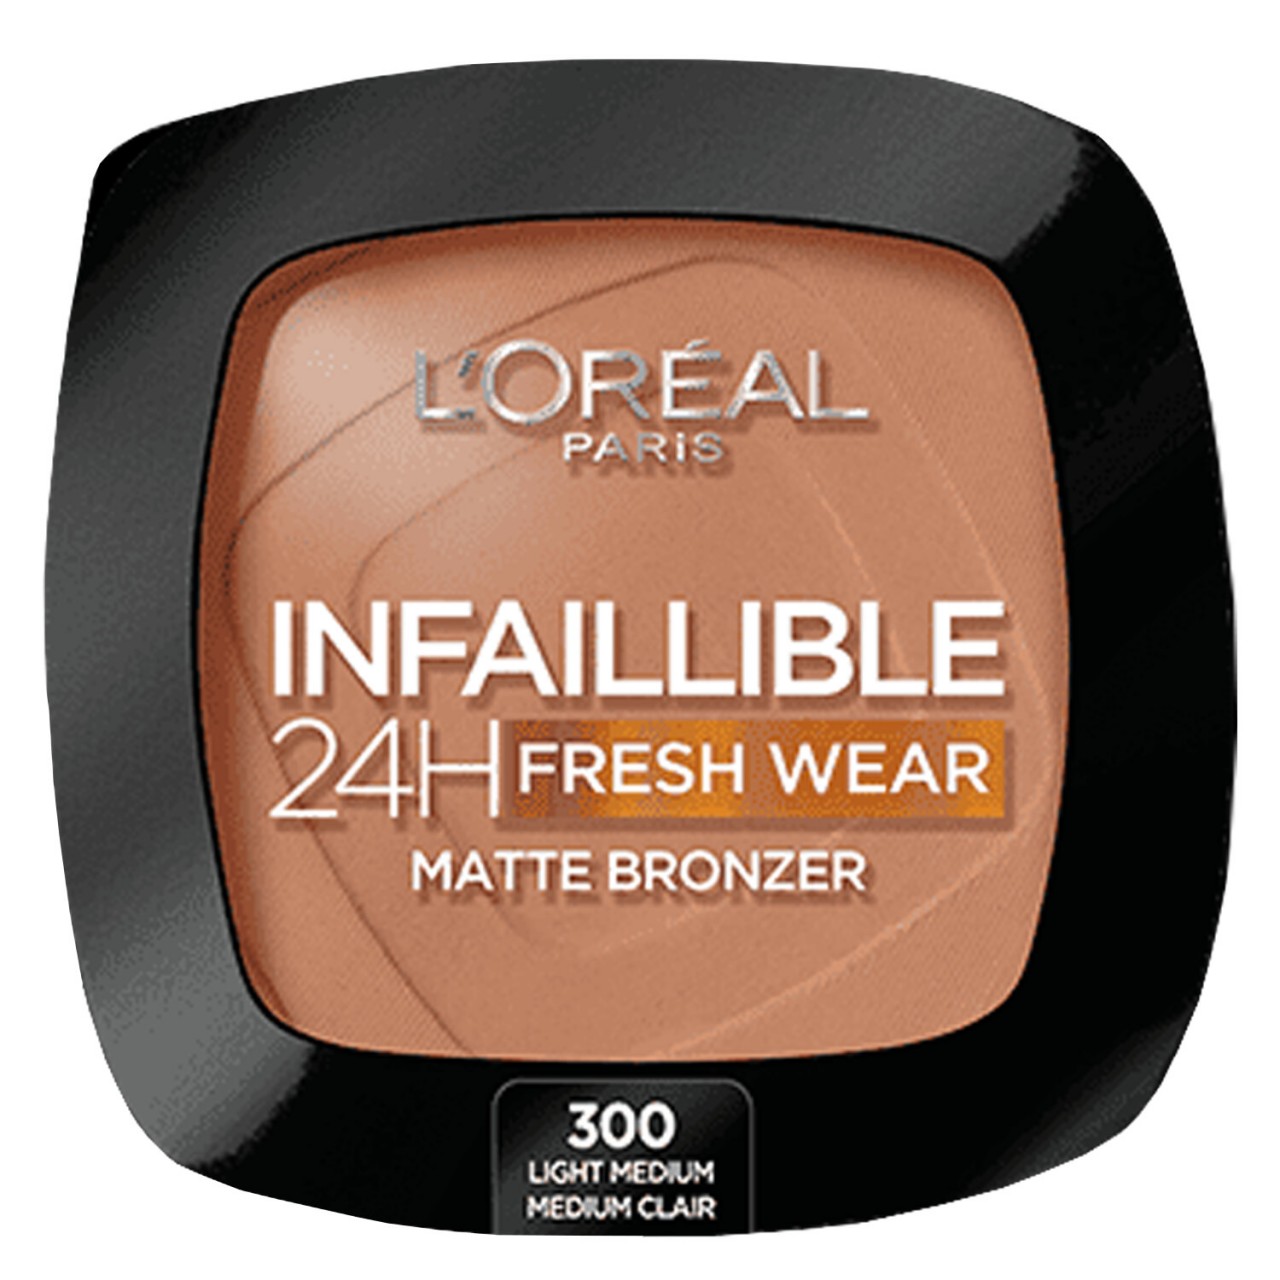 LOréal Infaillible - 24H Fresh Wear Matte Bronzer 300 Light Medium von L'Oréal Paris